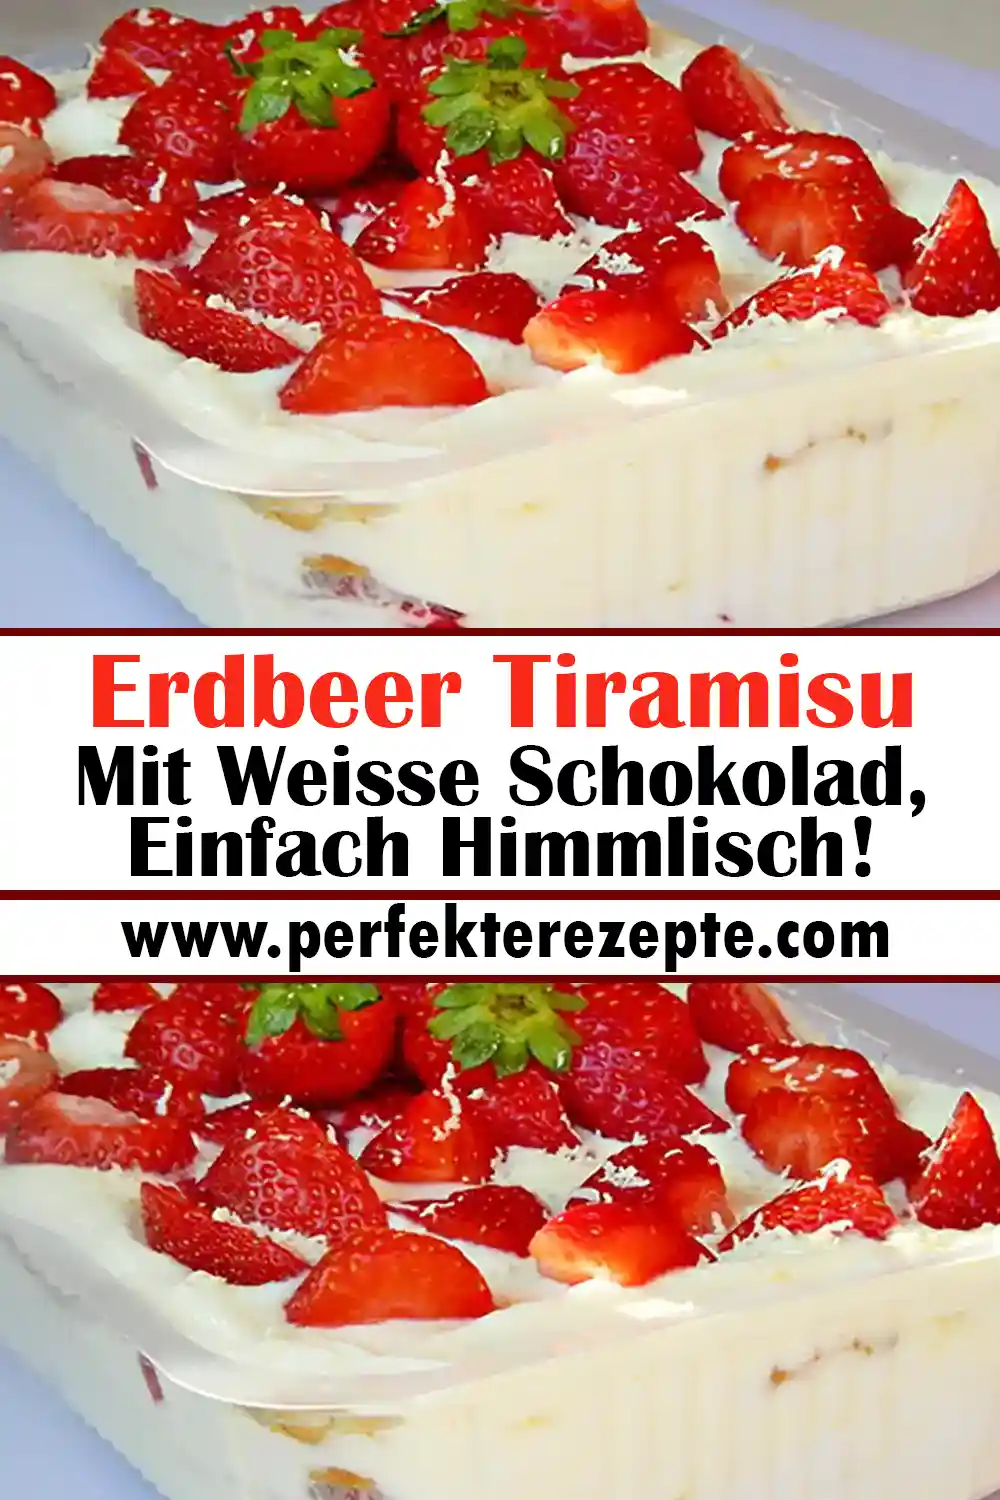 Einfach Himmlisch! Erdbeer Tiramisu Mit Weisse Schokolad Rezept